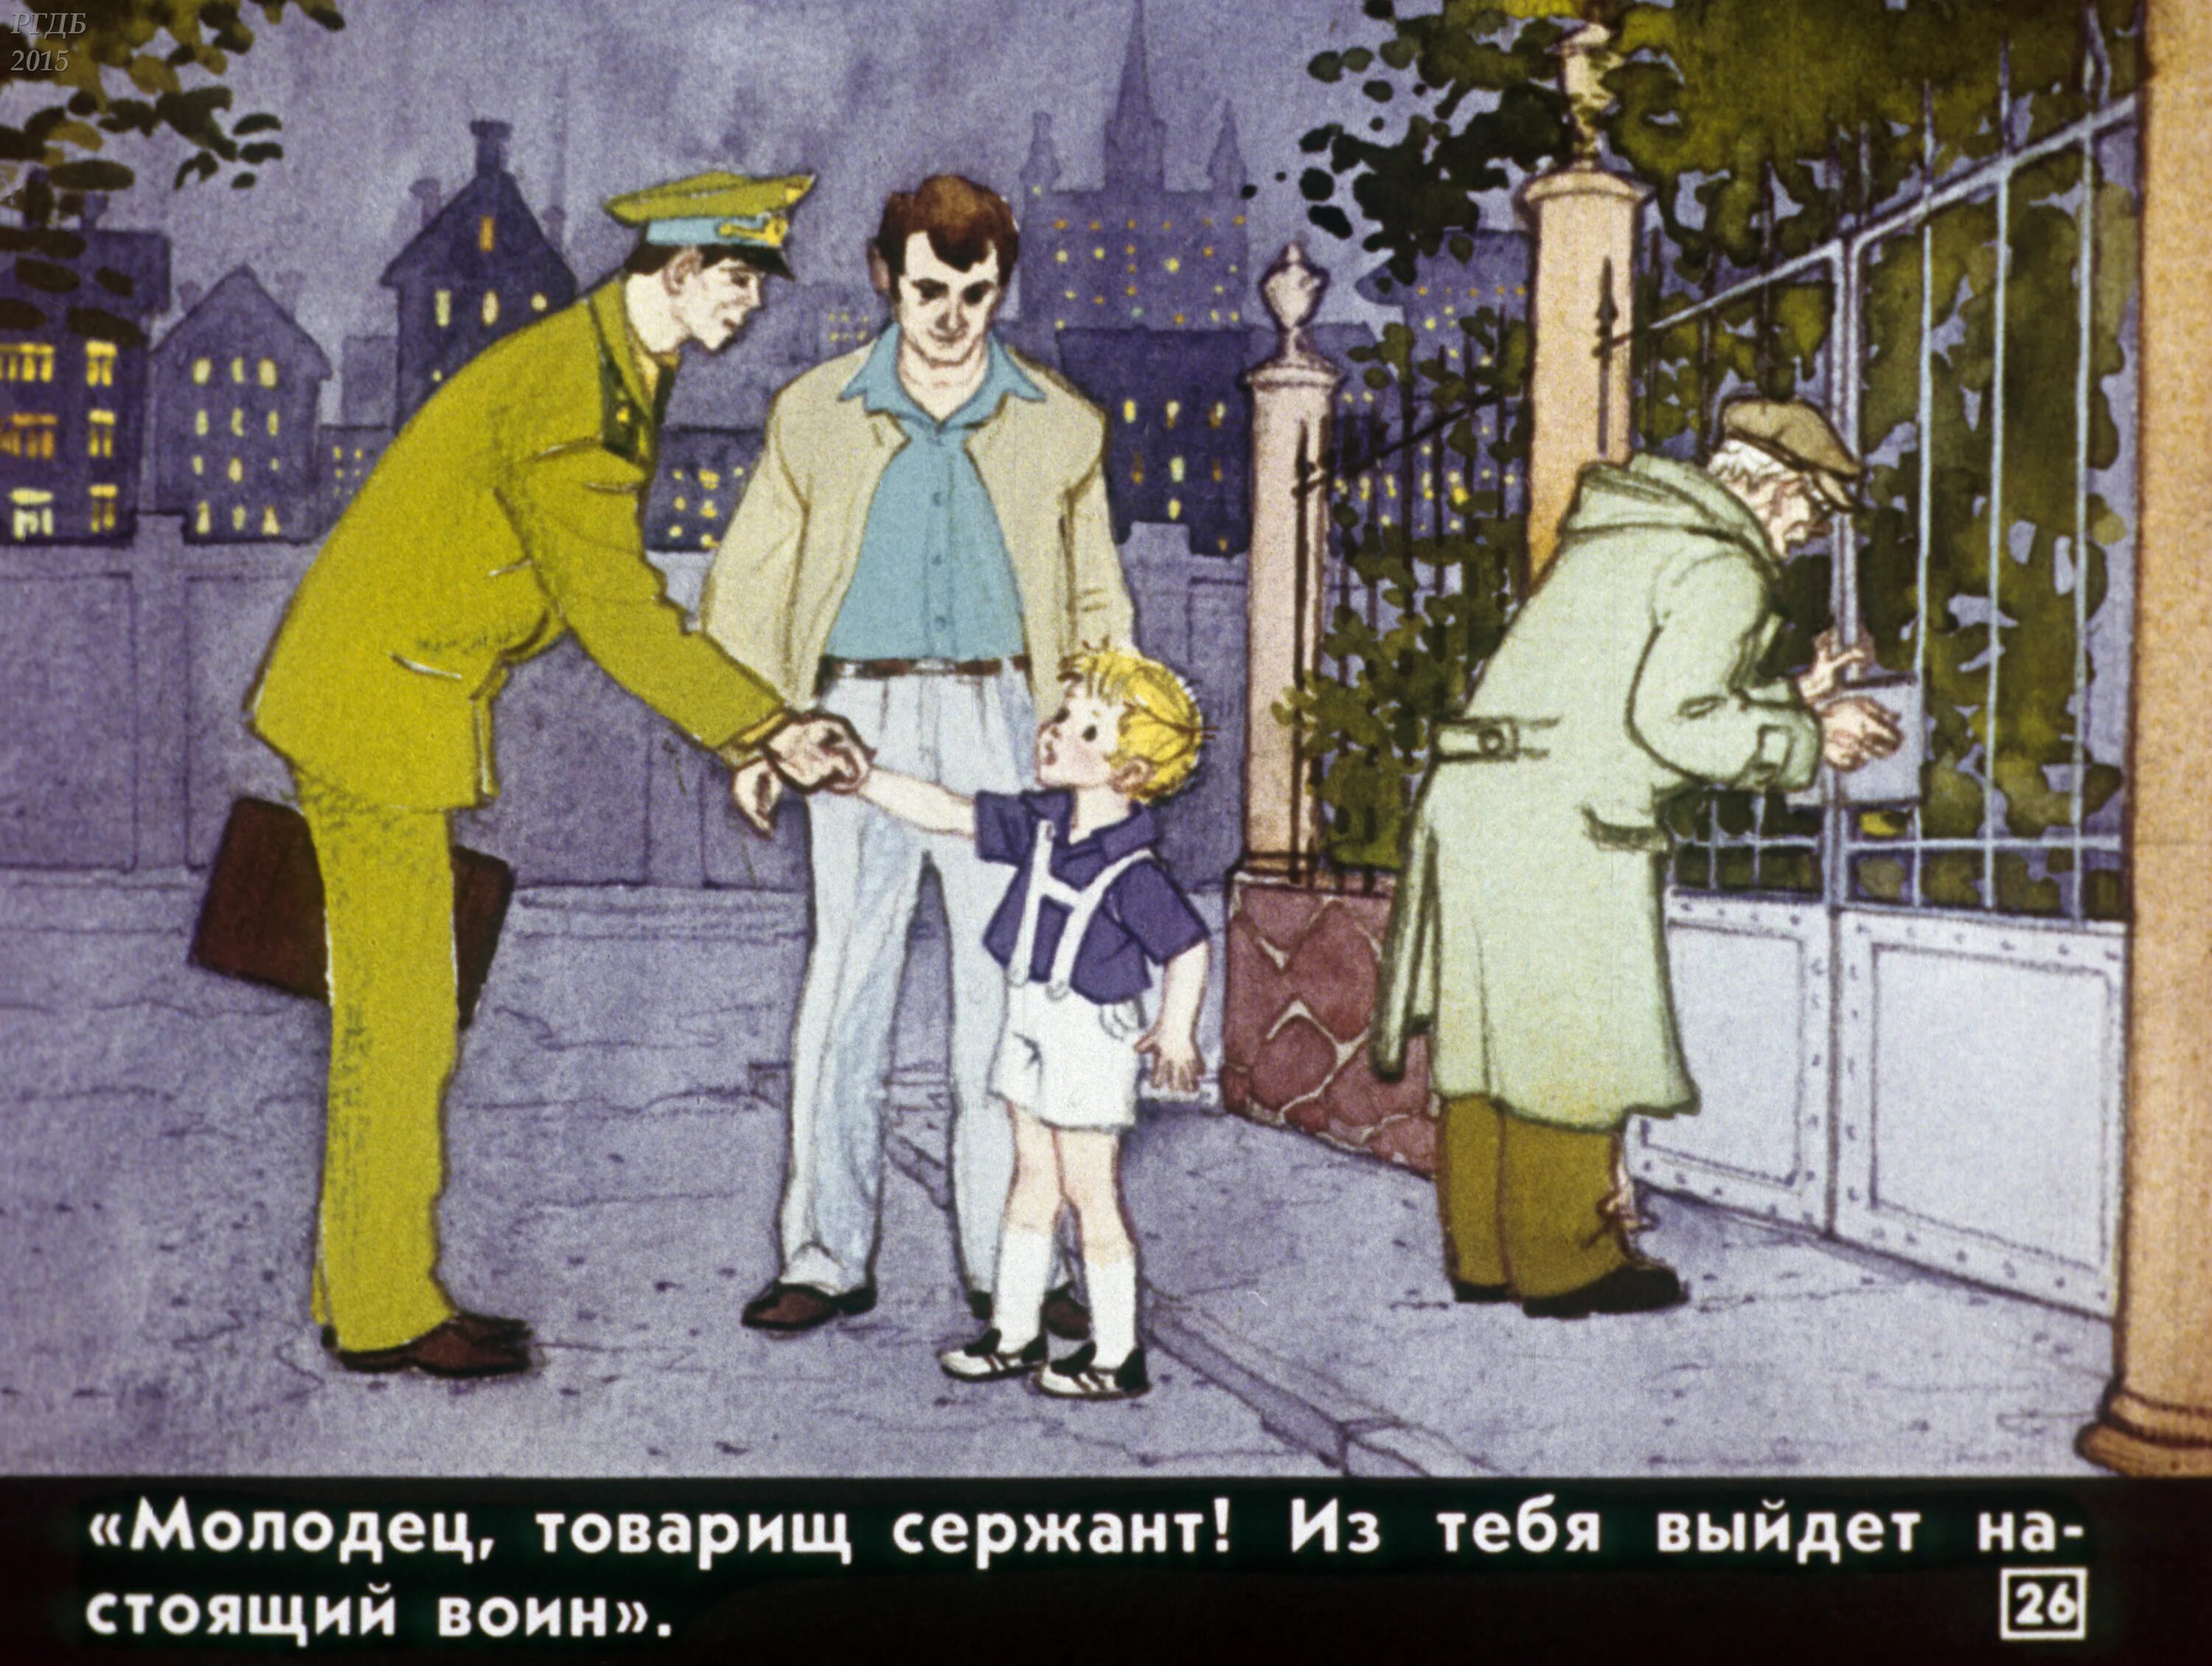 «Честное слово» л. Пантелеева (1941). Иллюстрации к произведению Пантелеева честное слово. Канал честное слово